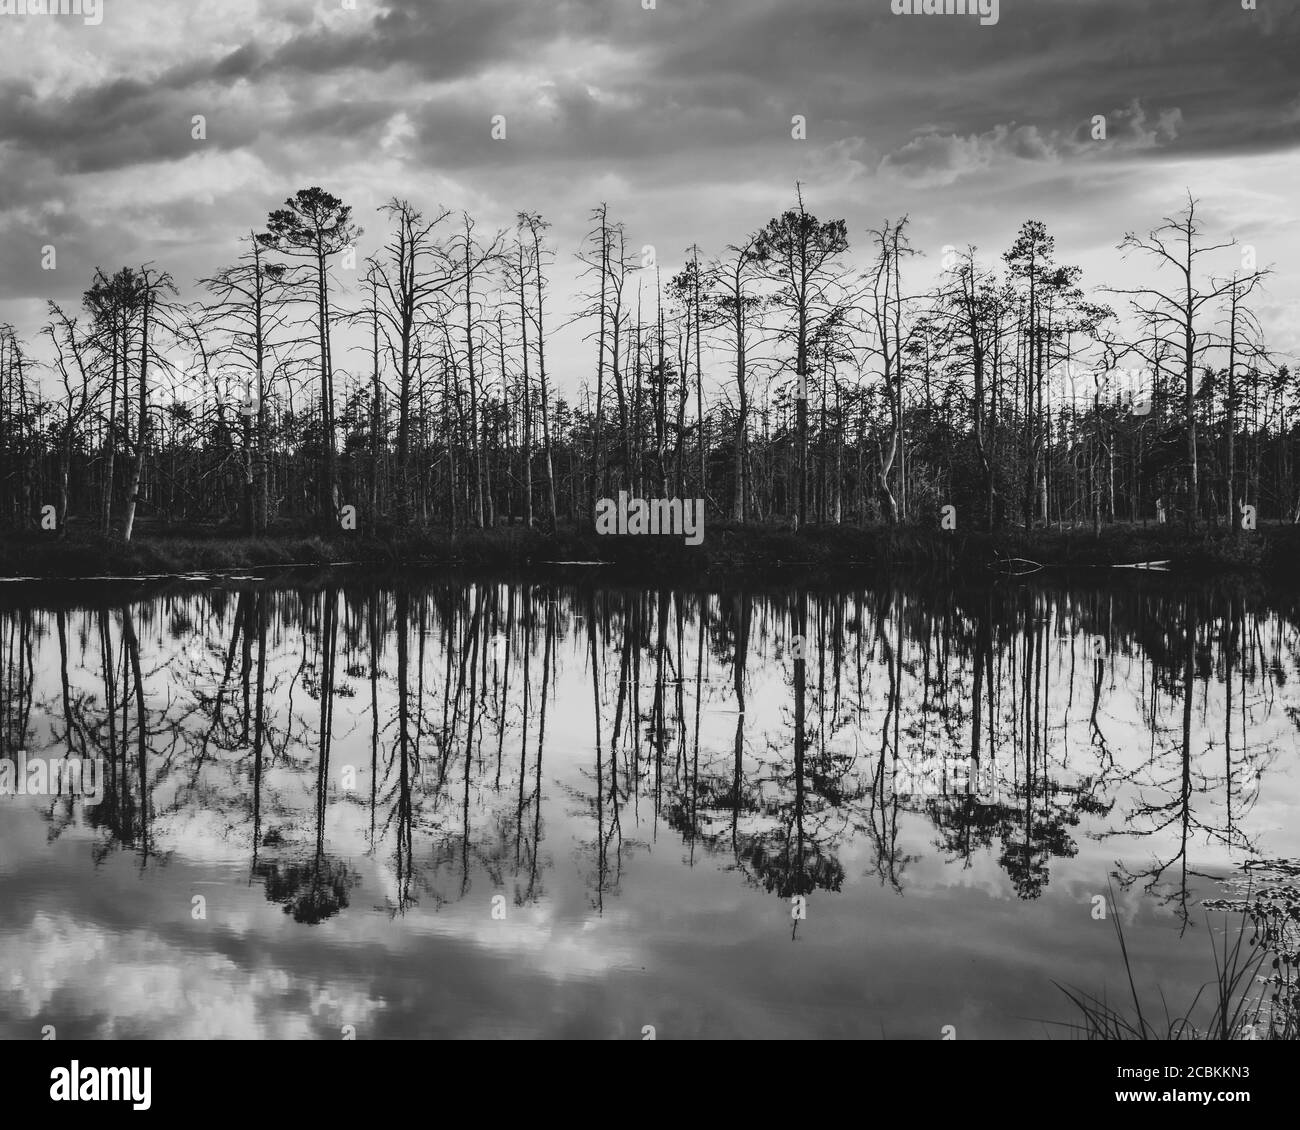 Foto en blanco y negro de la isla con árboles secos y su reflejo en el lago de pantano. Foto de stock